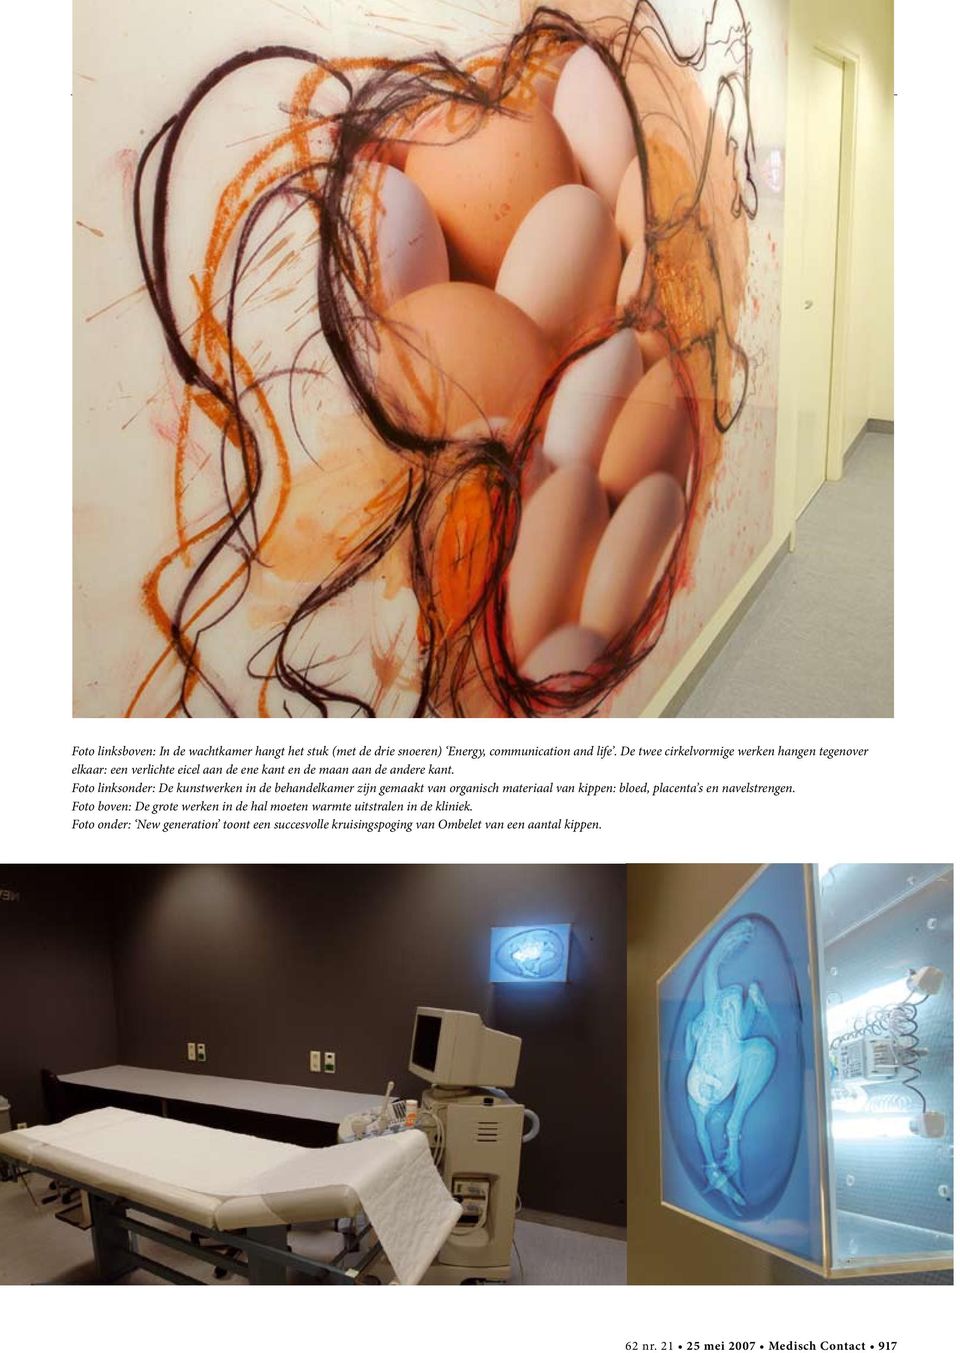 Foto linksonder: De kunstwerken in de behandelkamer zijn gemaakt van organisch materiaal van kippen: bloed, placenta s en navelstrengen.